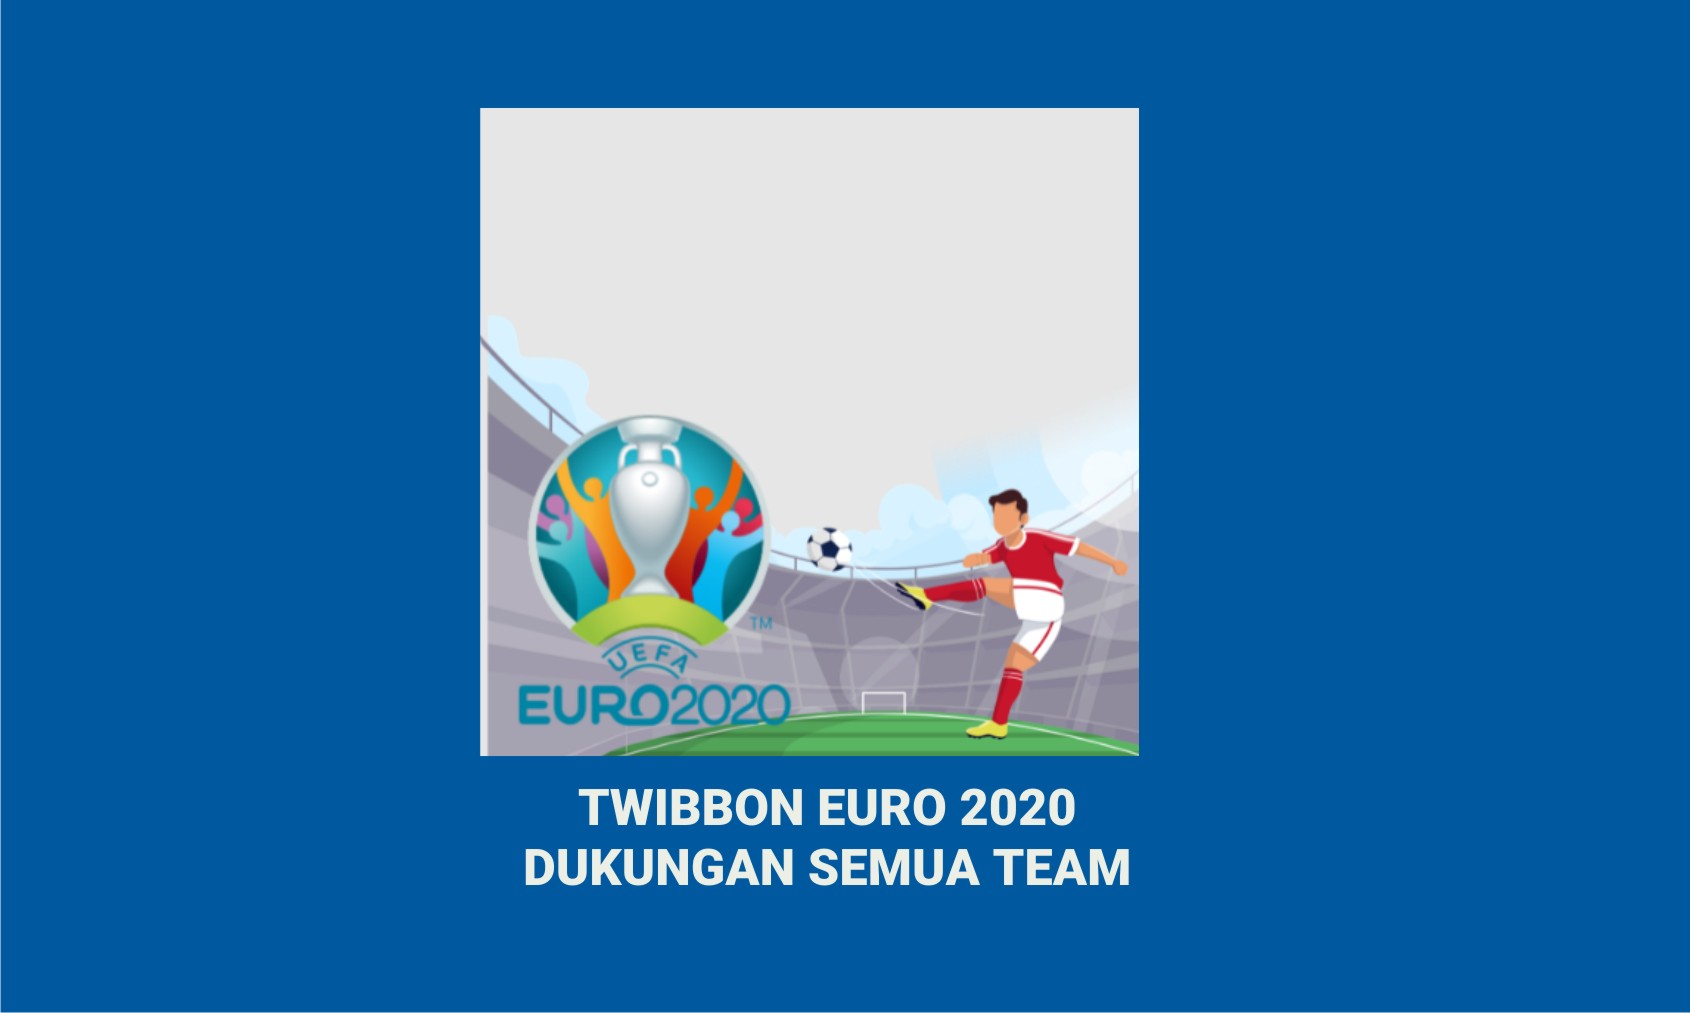 TWIBBON EURO 2020DUKUNGAN SEMUA TEAM